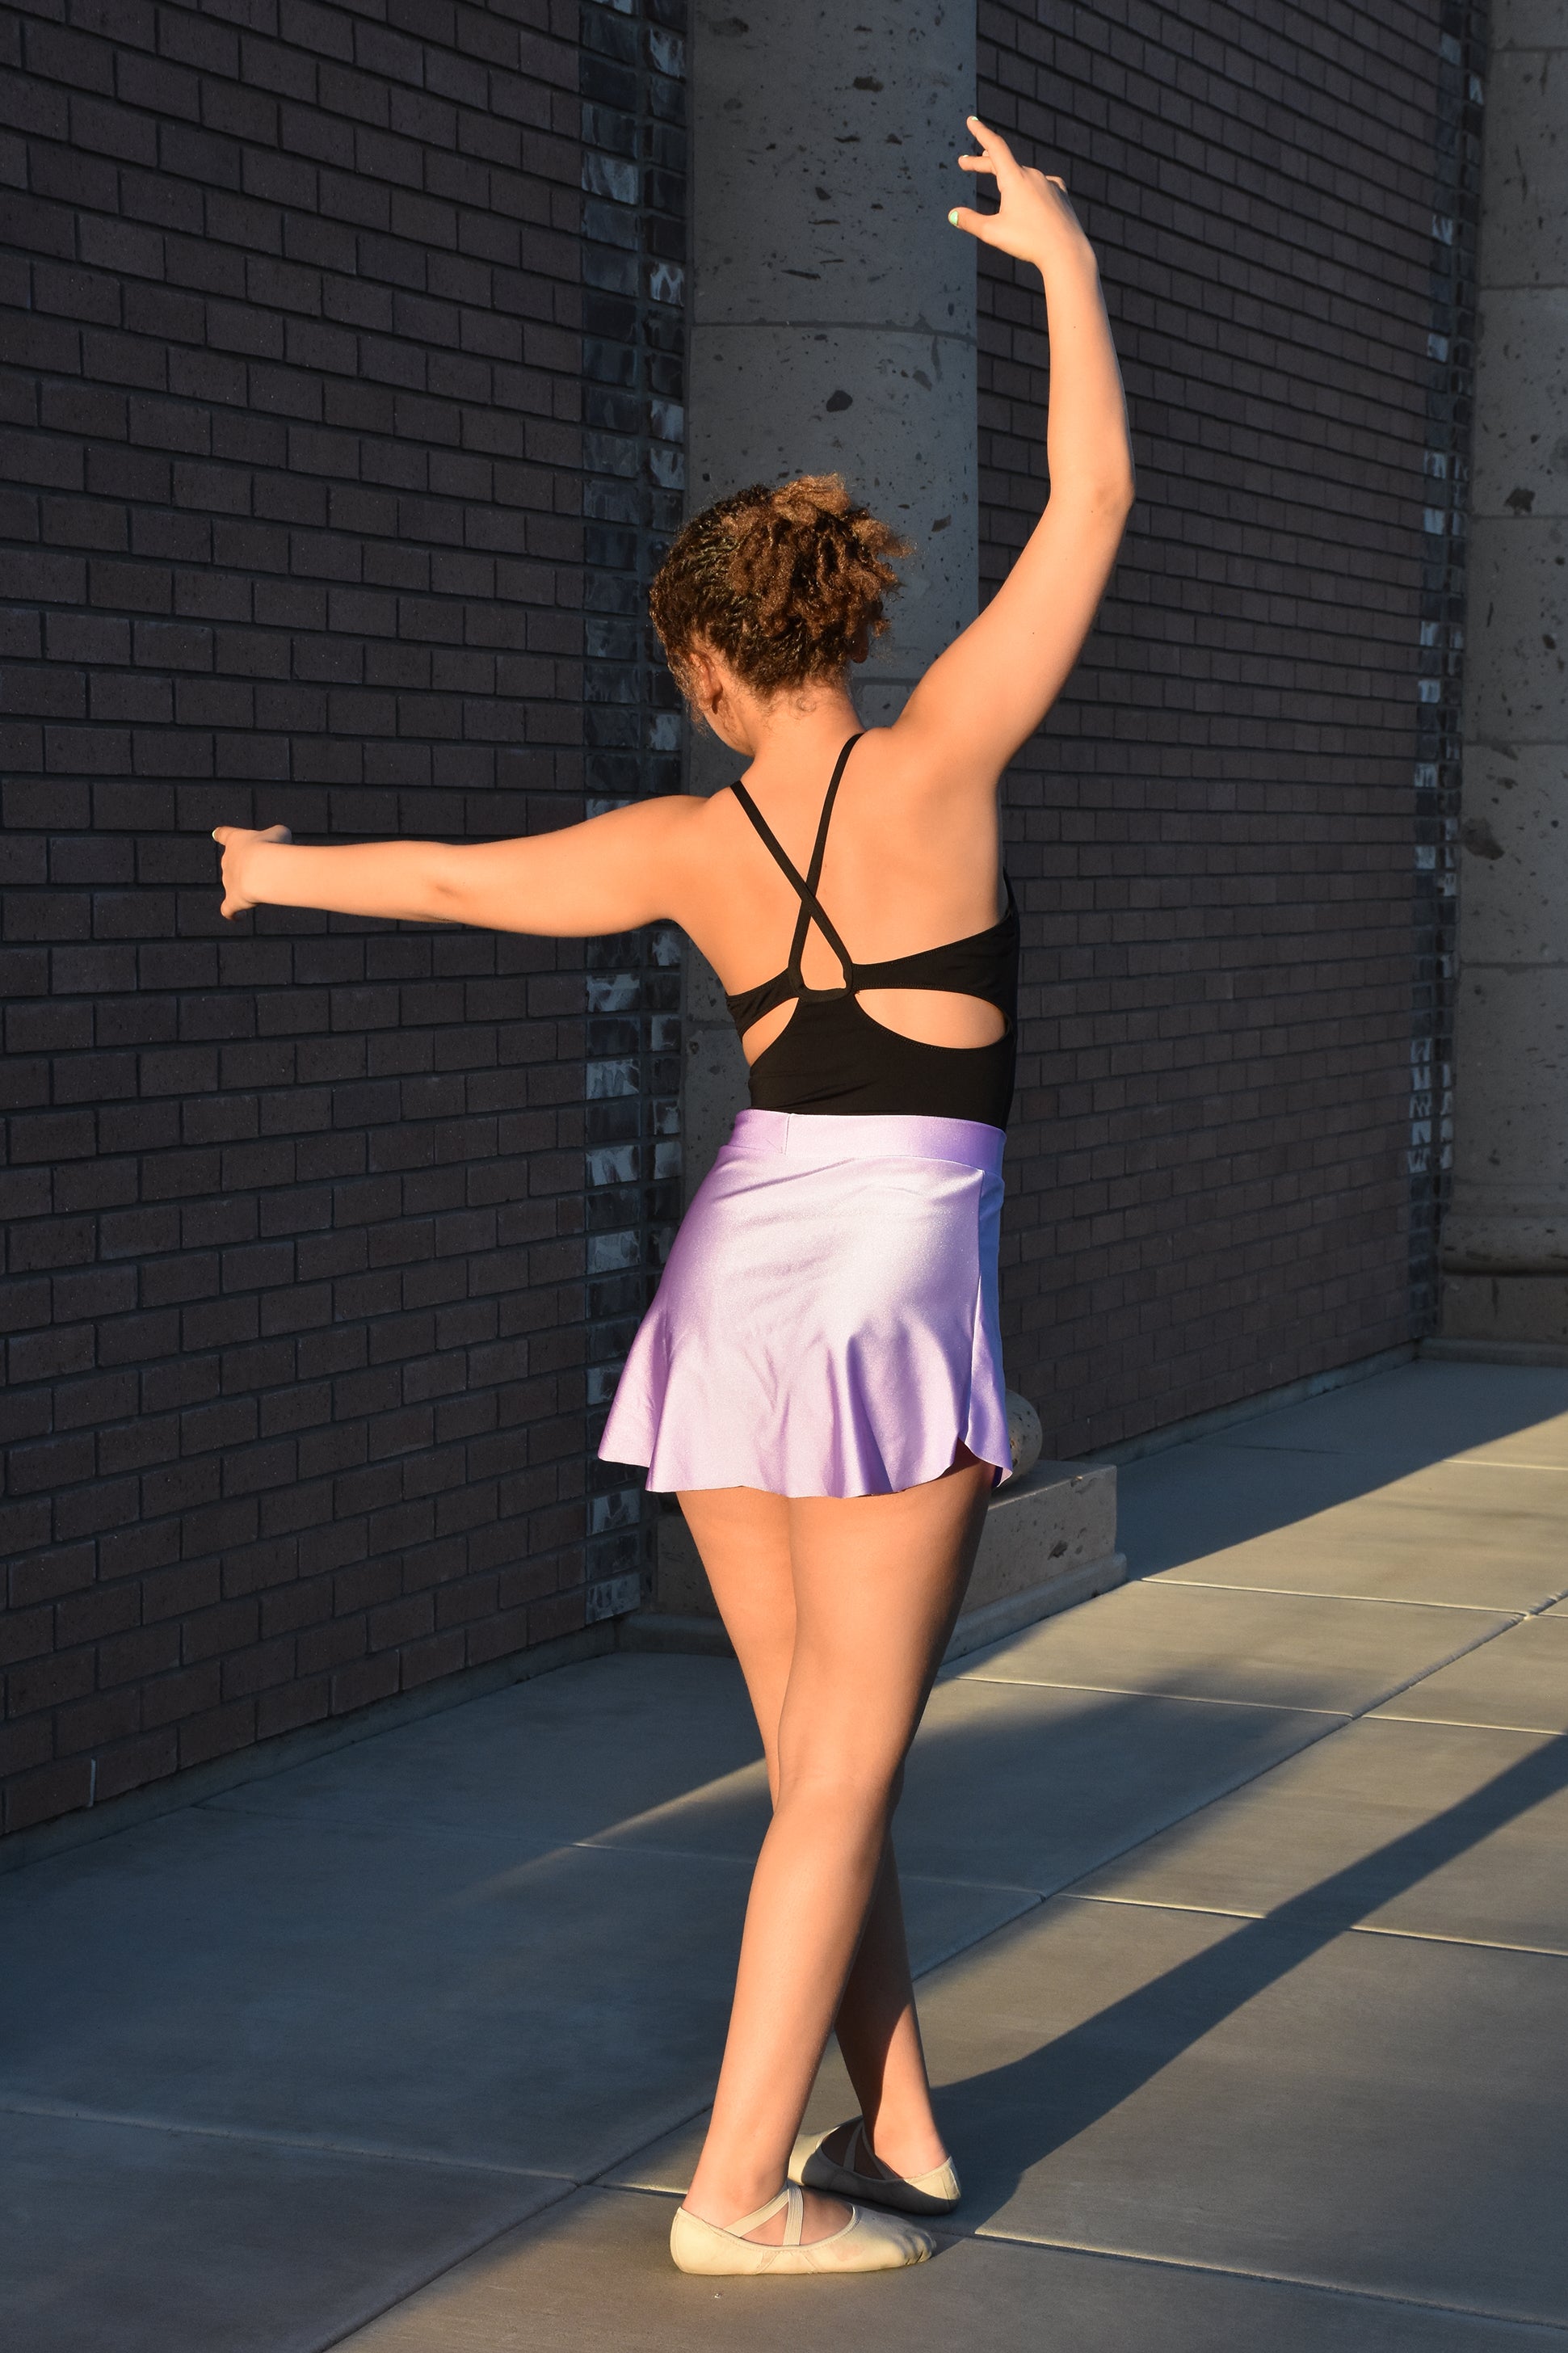 Rehearsal skirt for ballet and dance